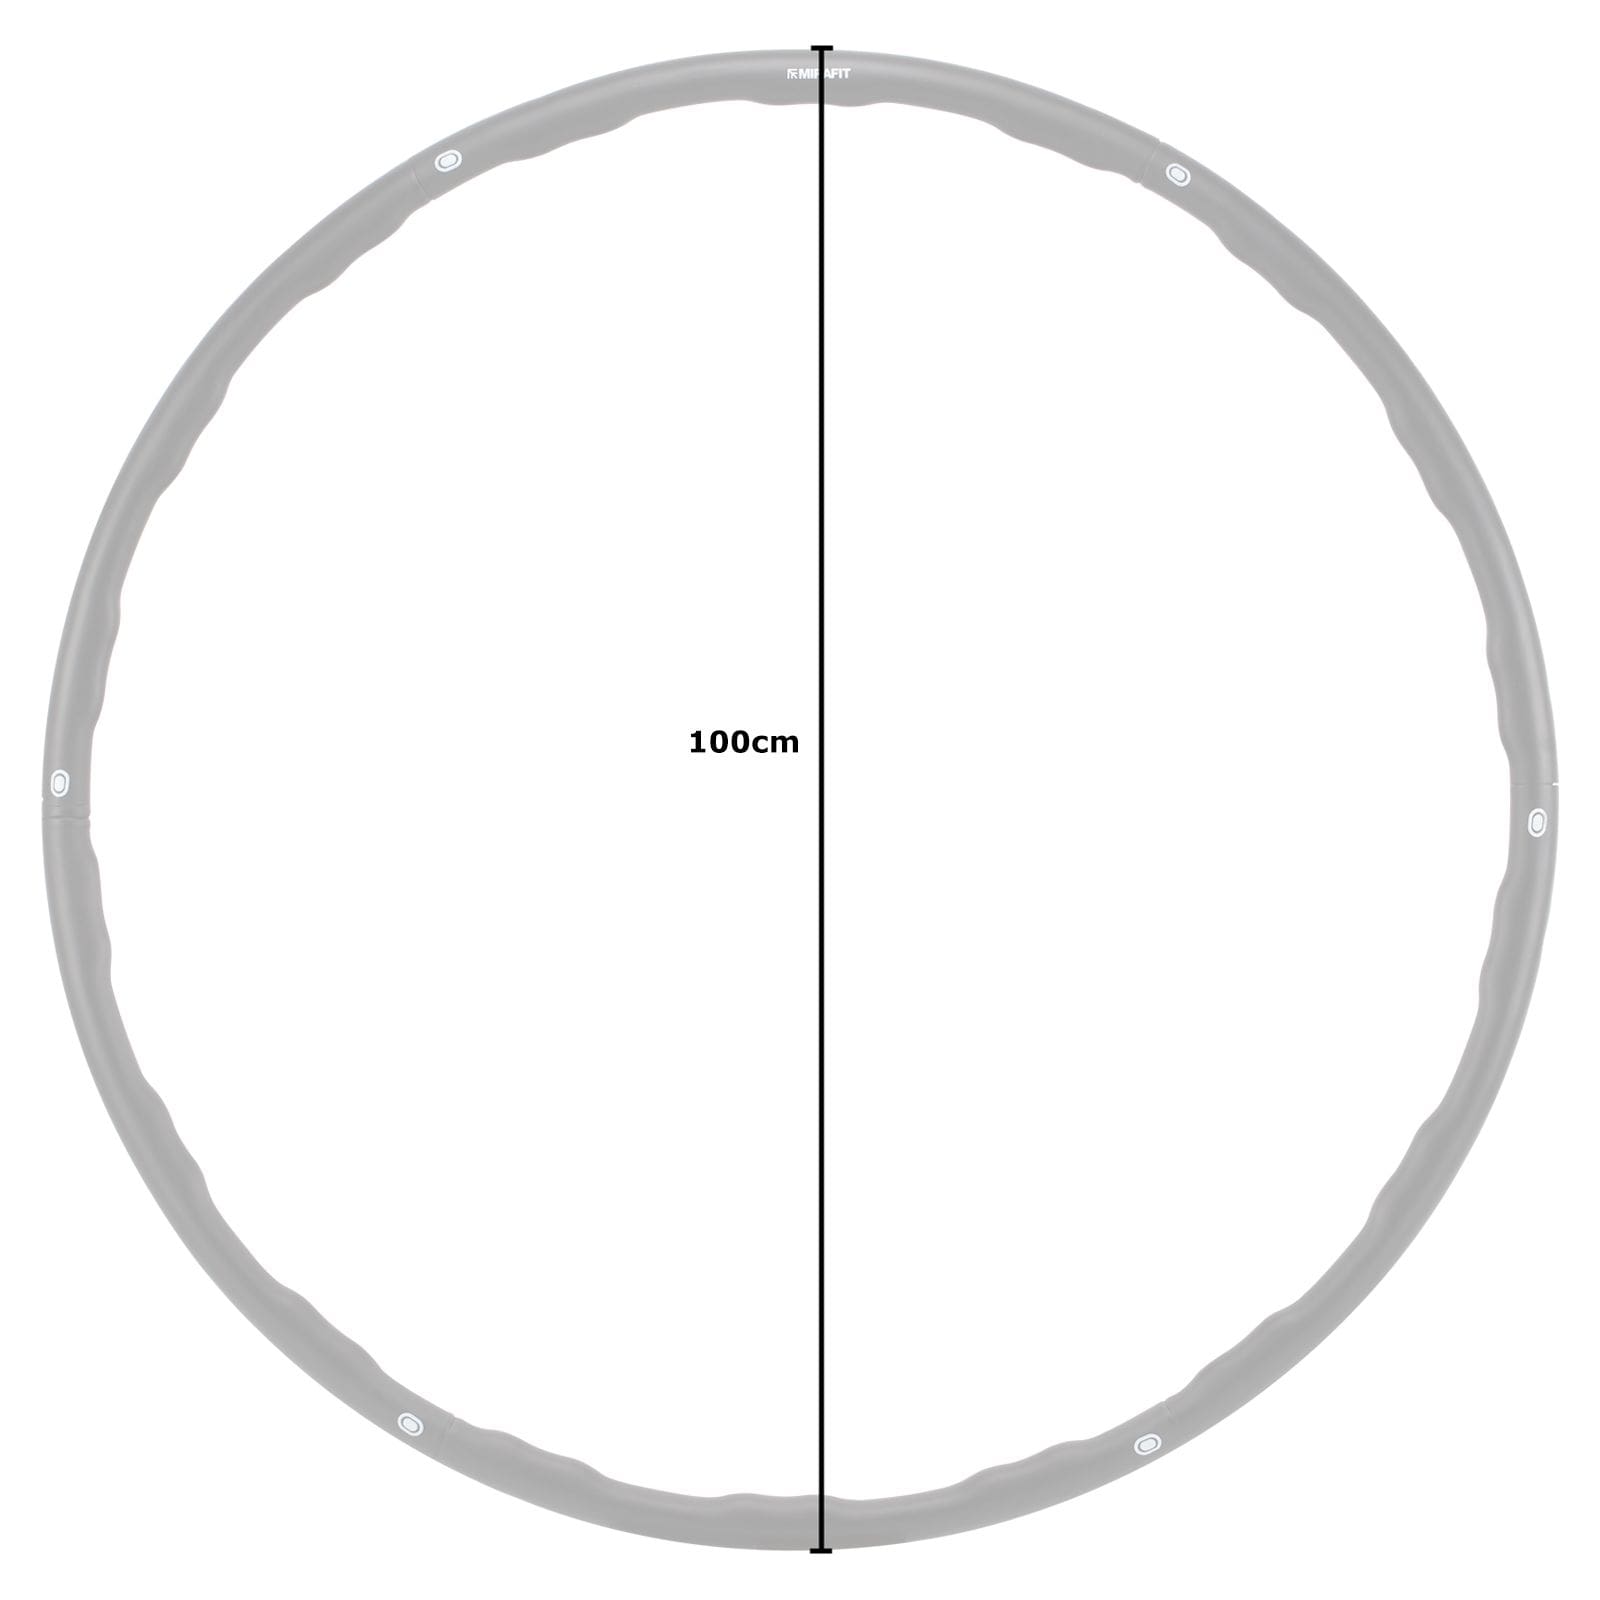 mirafit 1.2kg ridged weighted fitness hula hoop Diameter